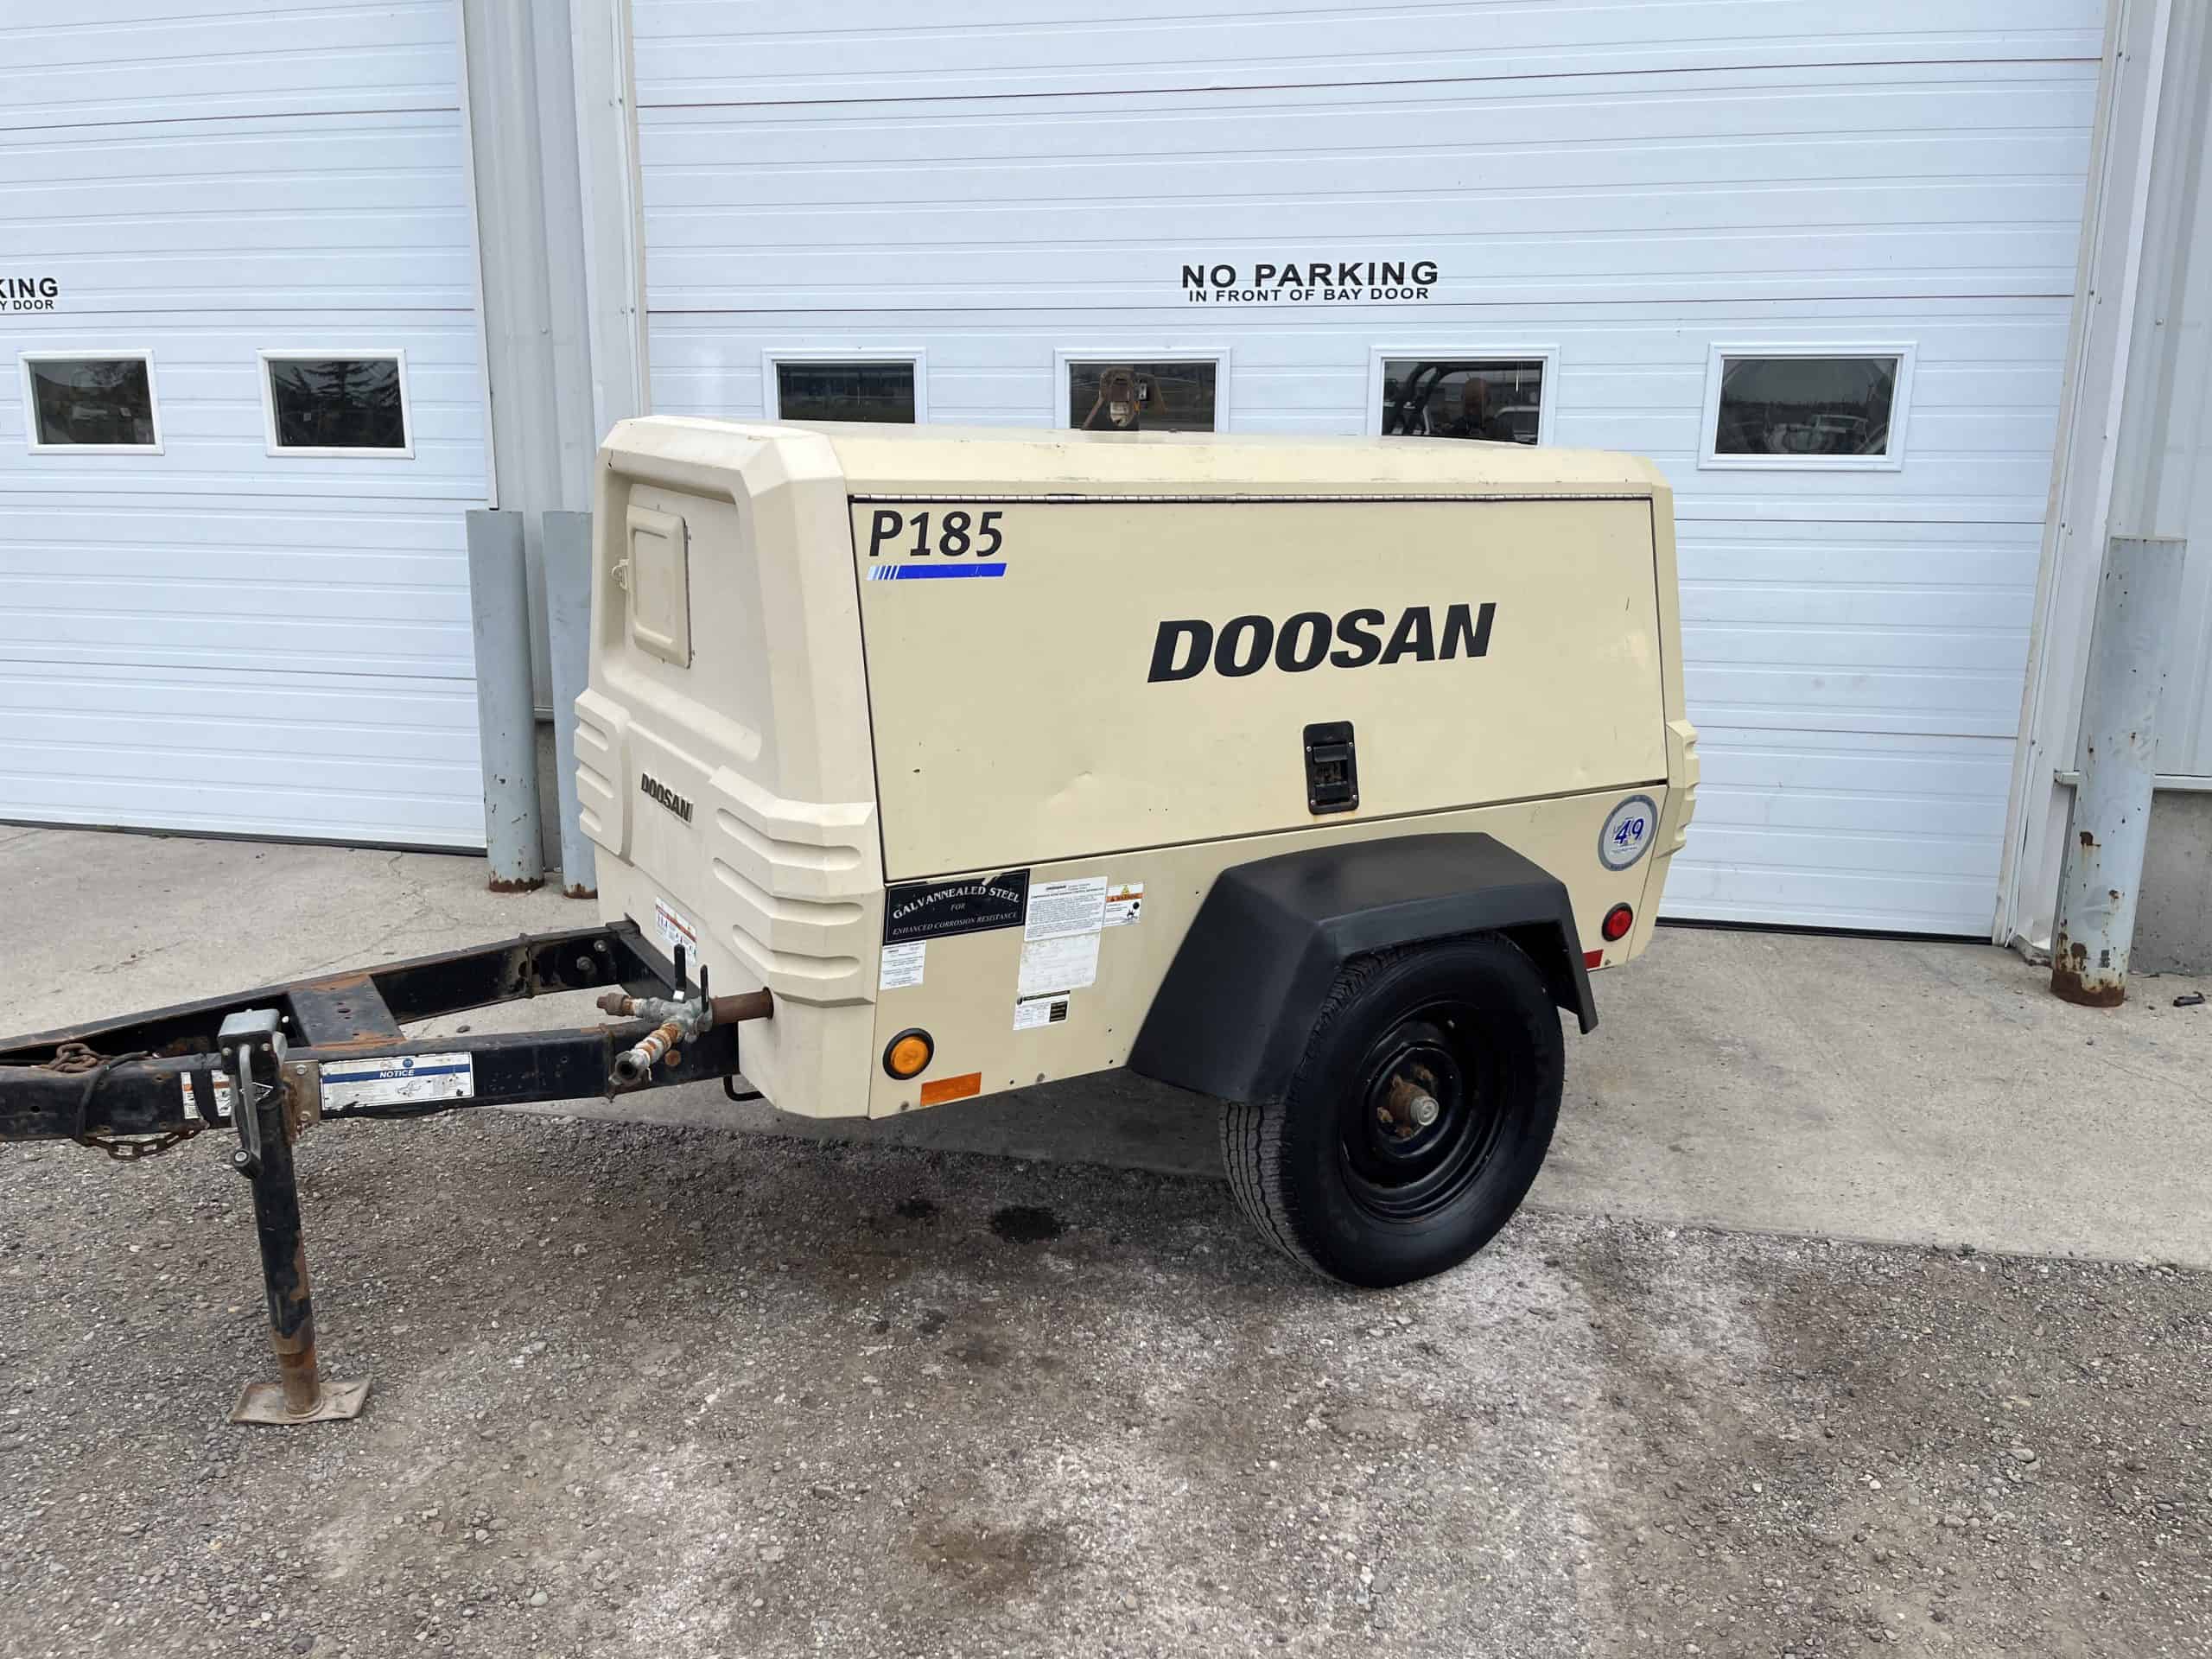 Doosan P185 for sale diesel air compressor in Calgary & Edmonton, AB. Kelowna, Vancouver, Victoria BC.